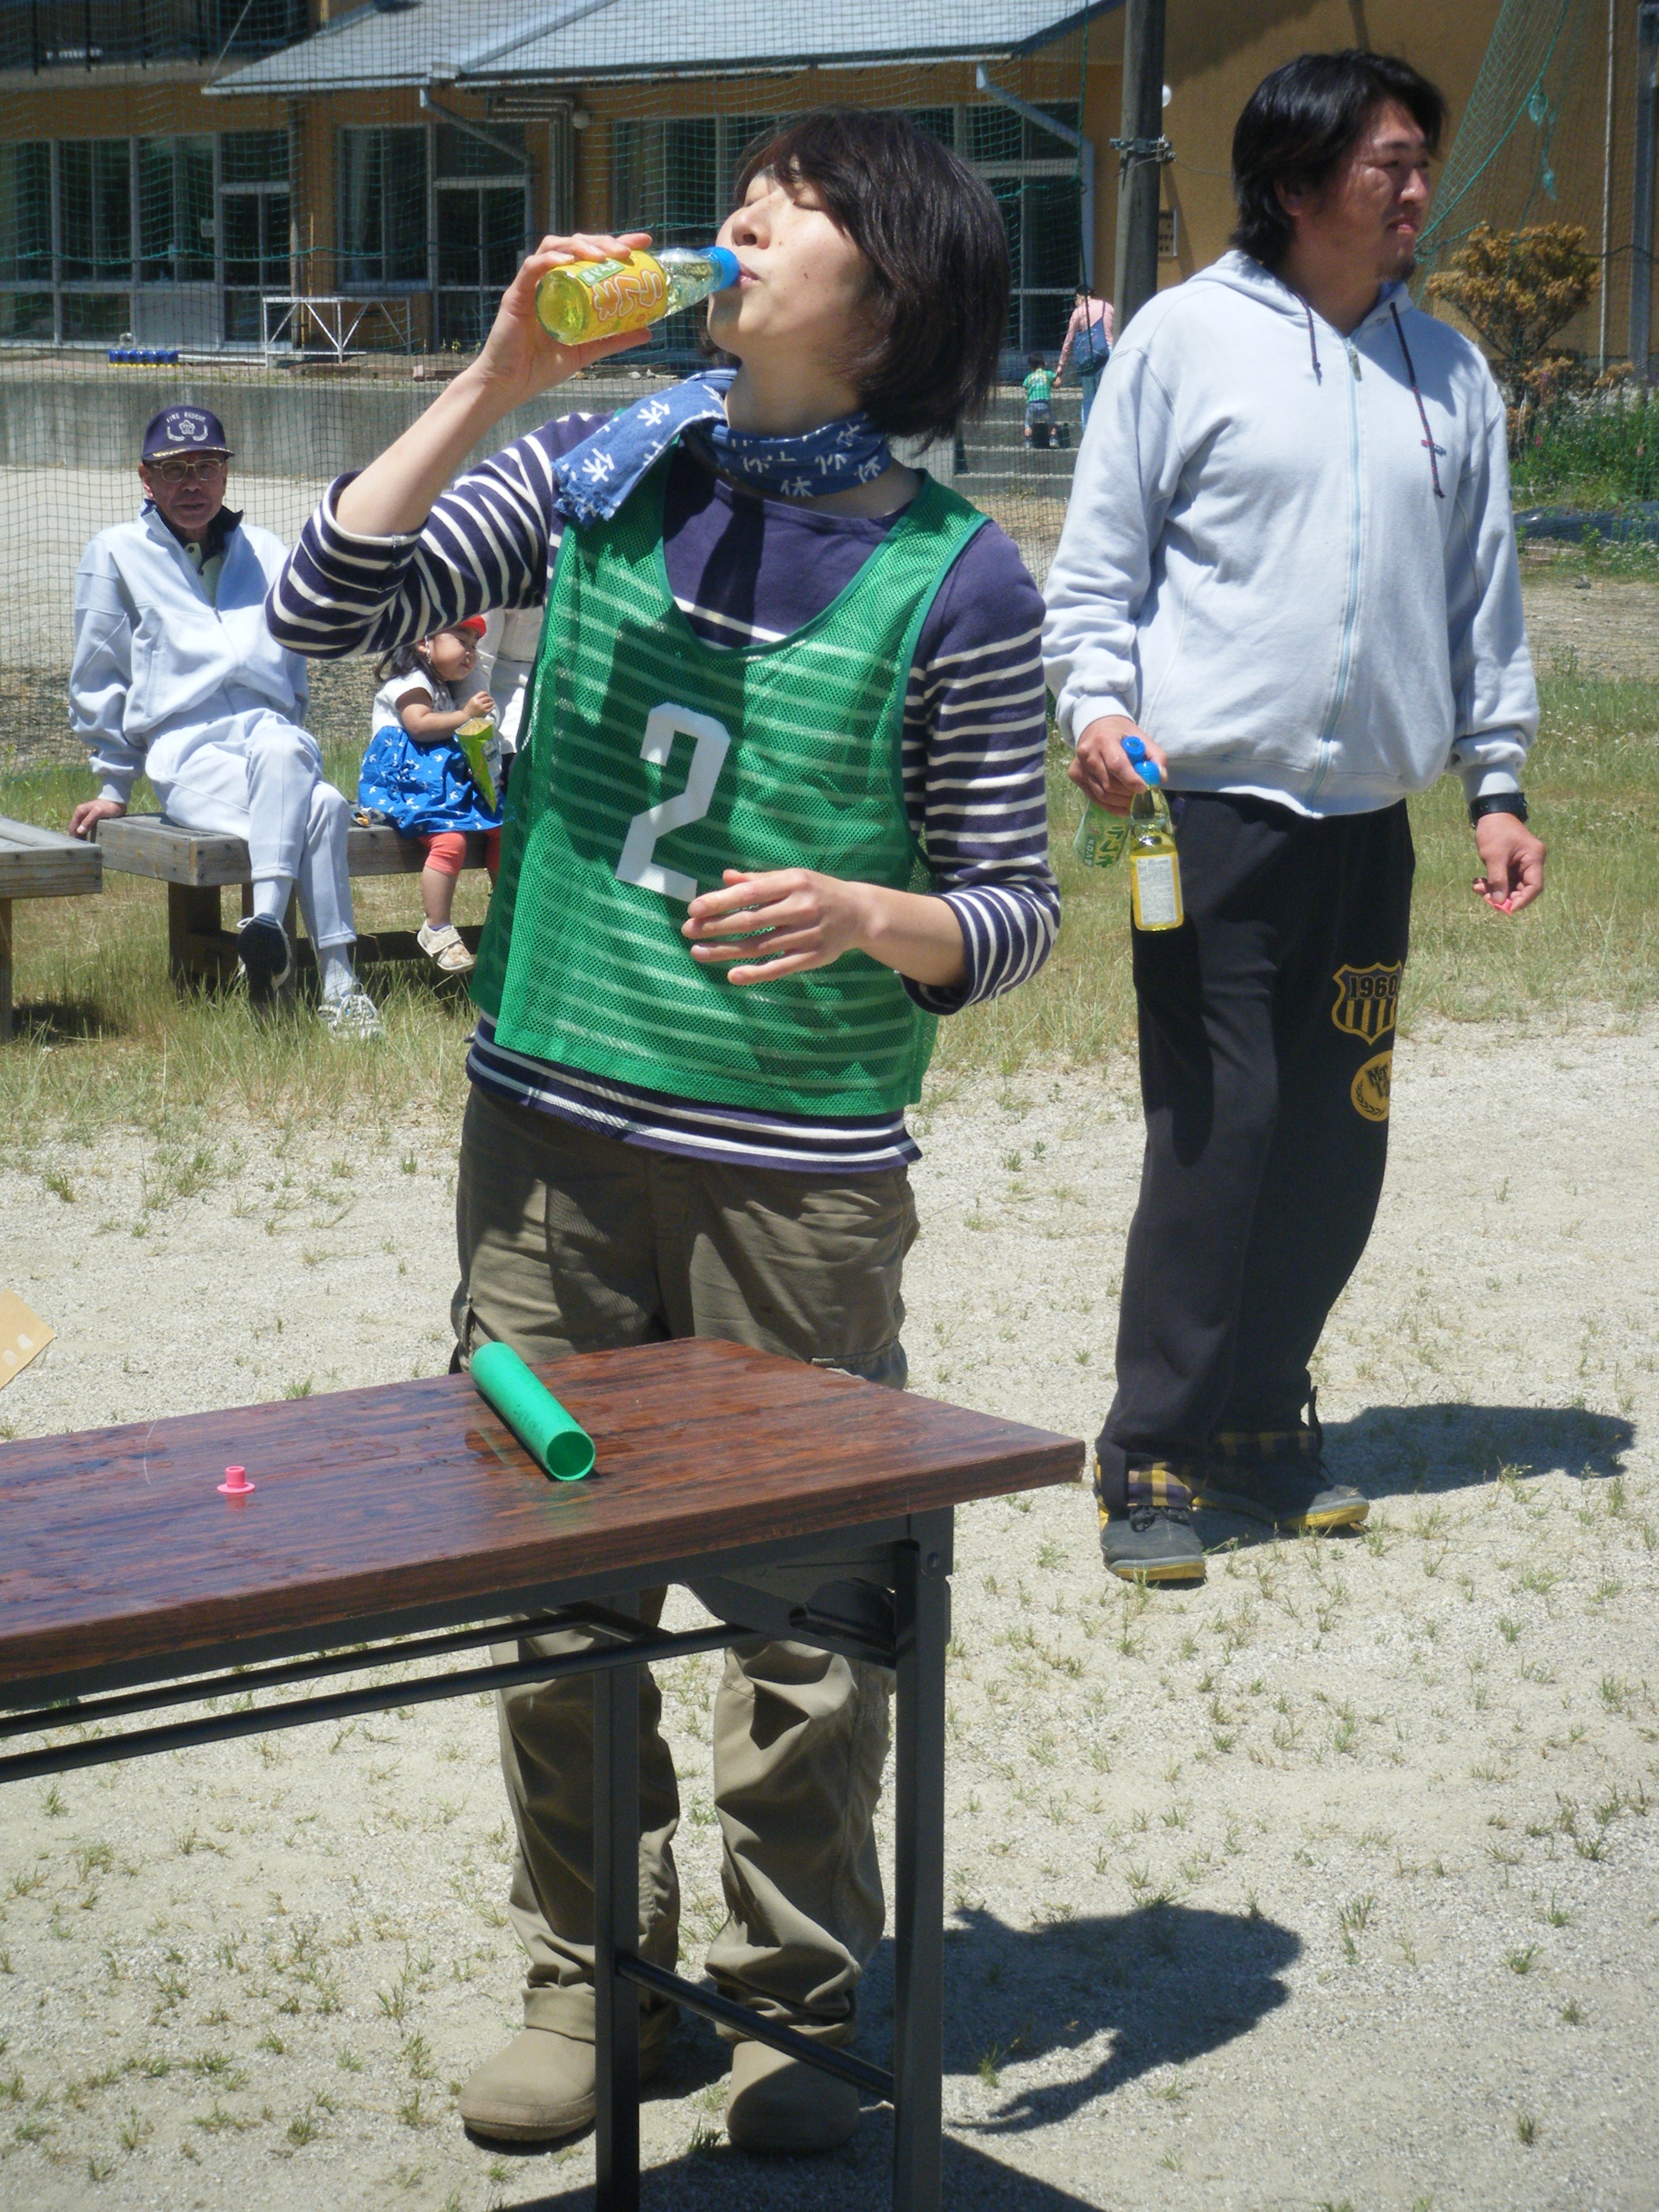 小友町民運動会で、ラムネを一気飲みする裕美氏。